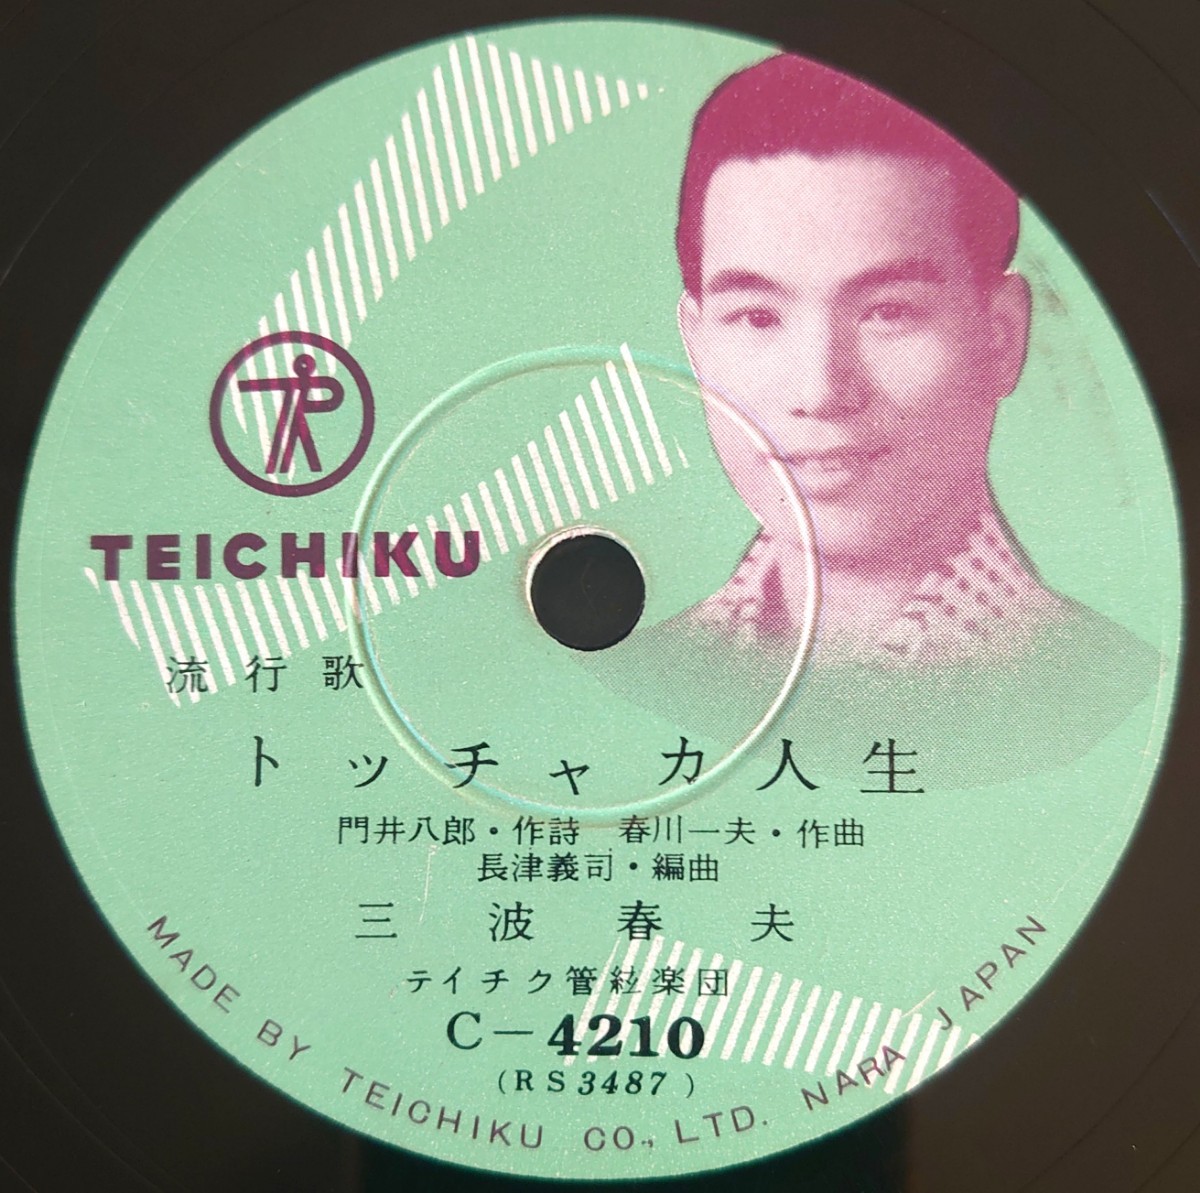 【SP盤レコード】TEICHIKU 流行歌 ヤッチャおどり/トッチャカ人生 三波春夫/SPレコード_画像5